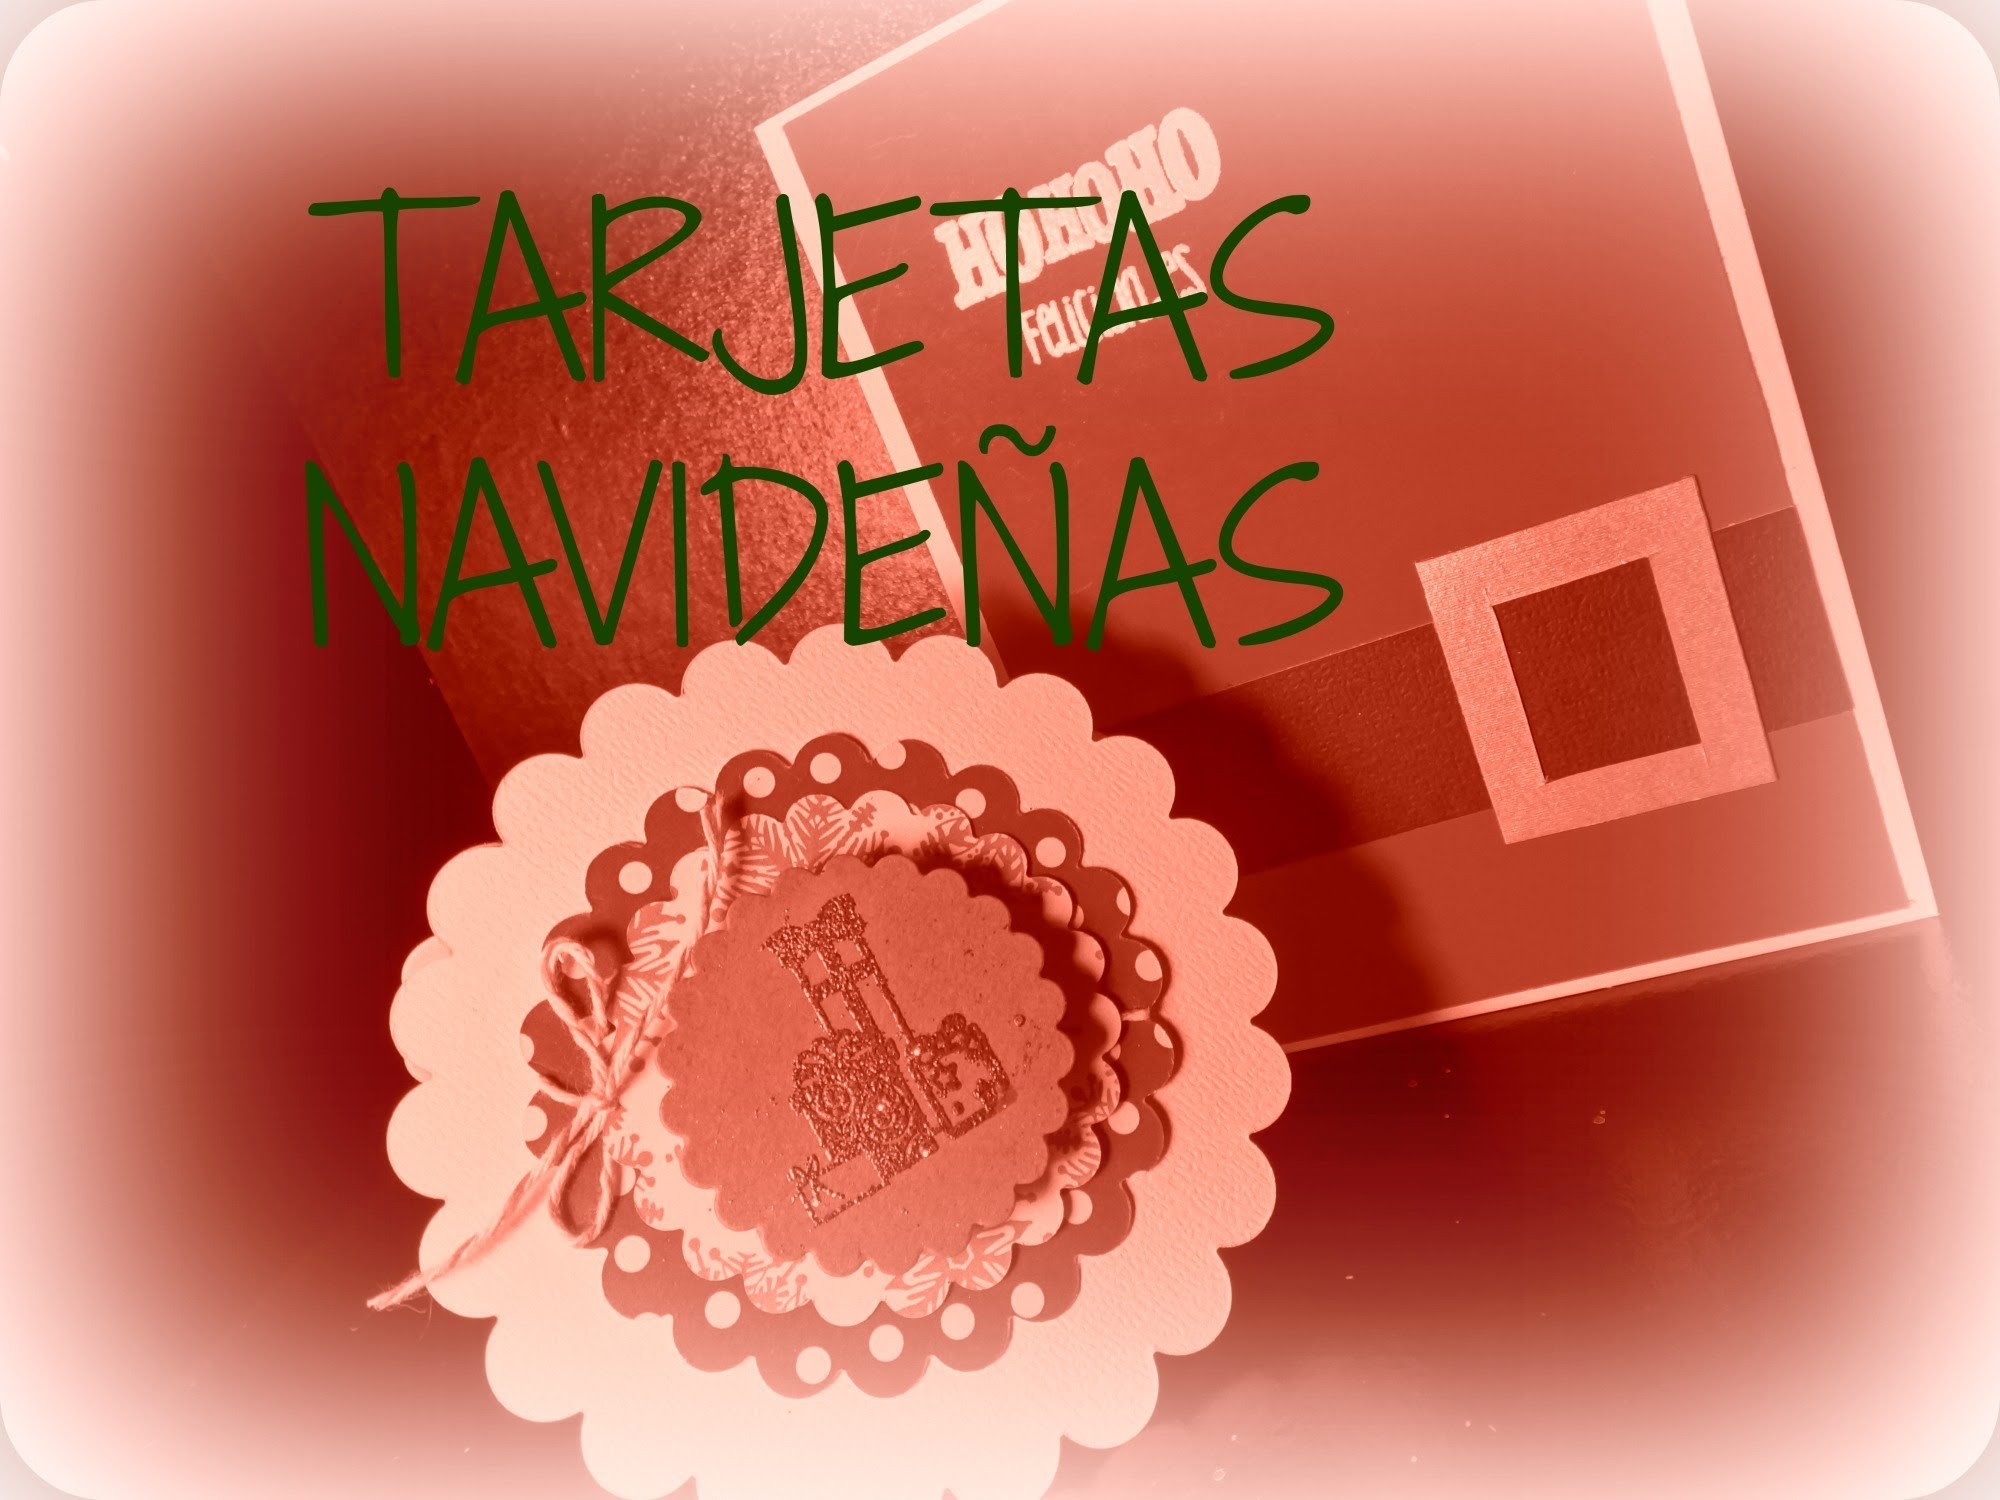 Tarjetas Navideñas - Christmas Cards